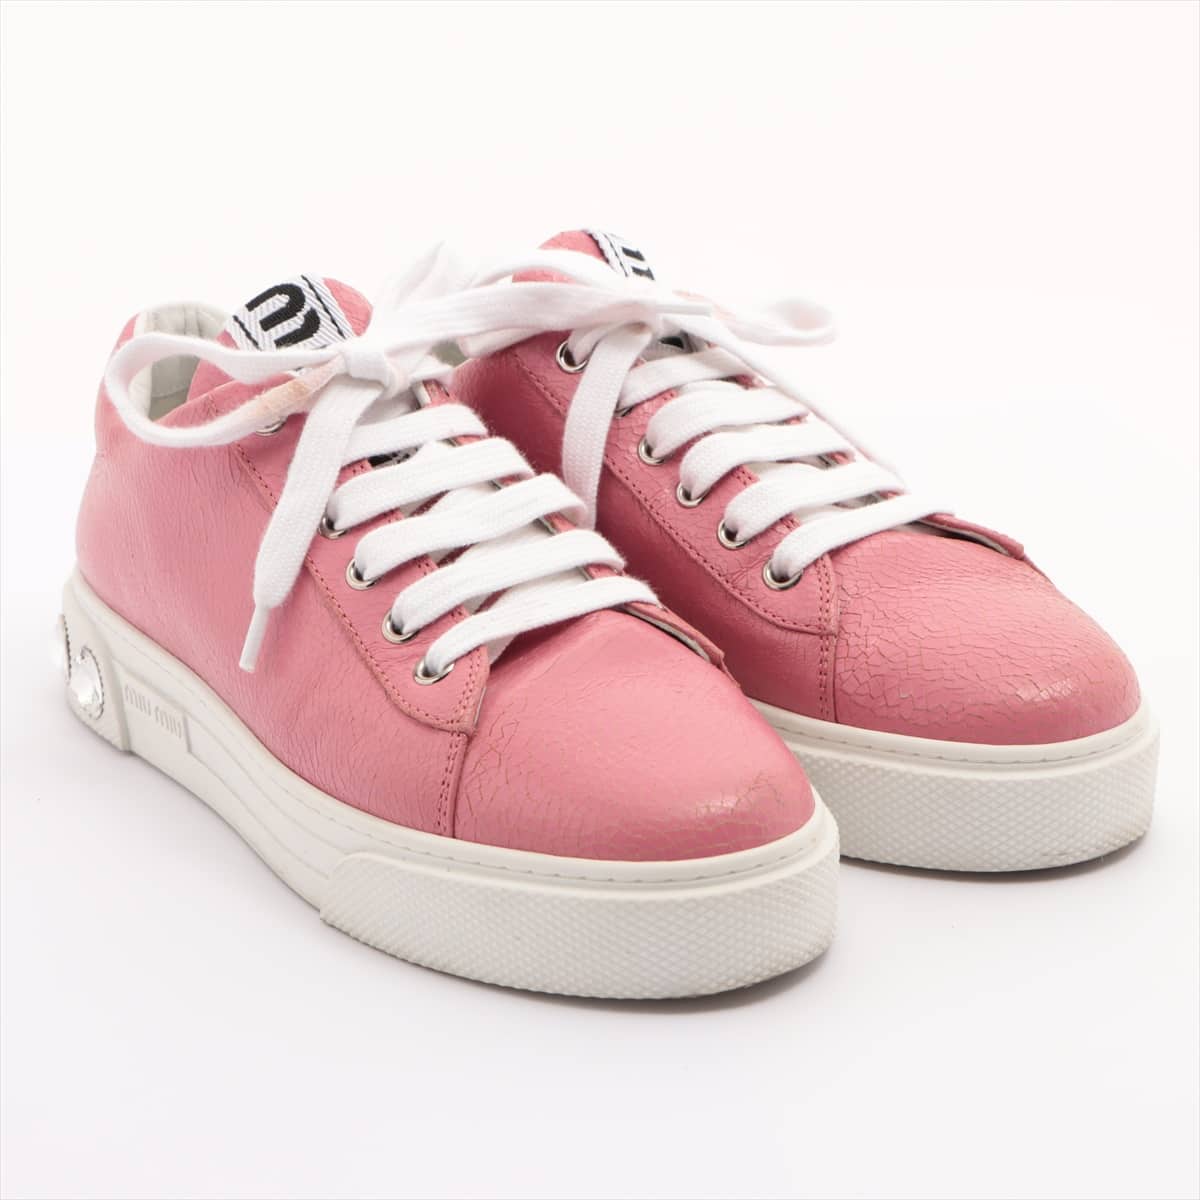 Miu Miu Leather Sneakers 37 Ladies' Pink Bijou